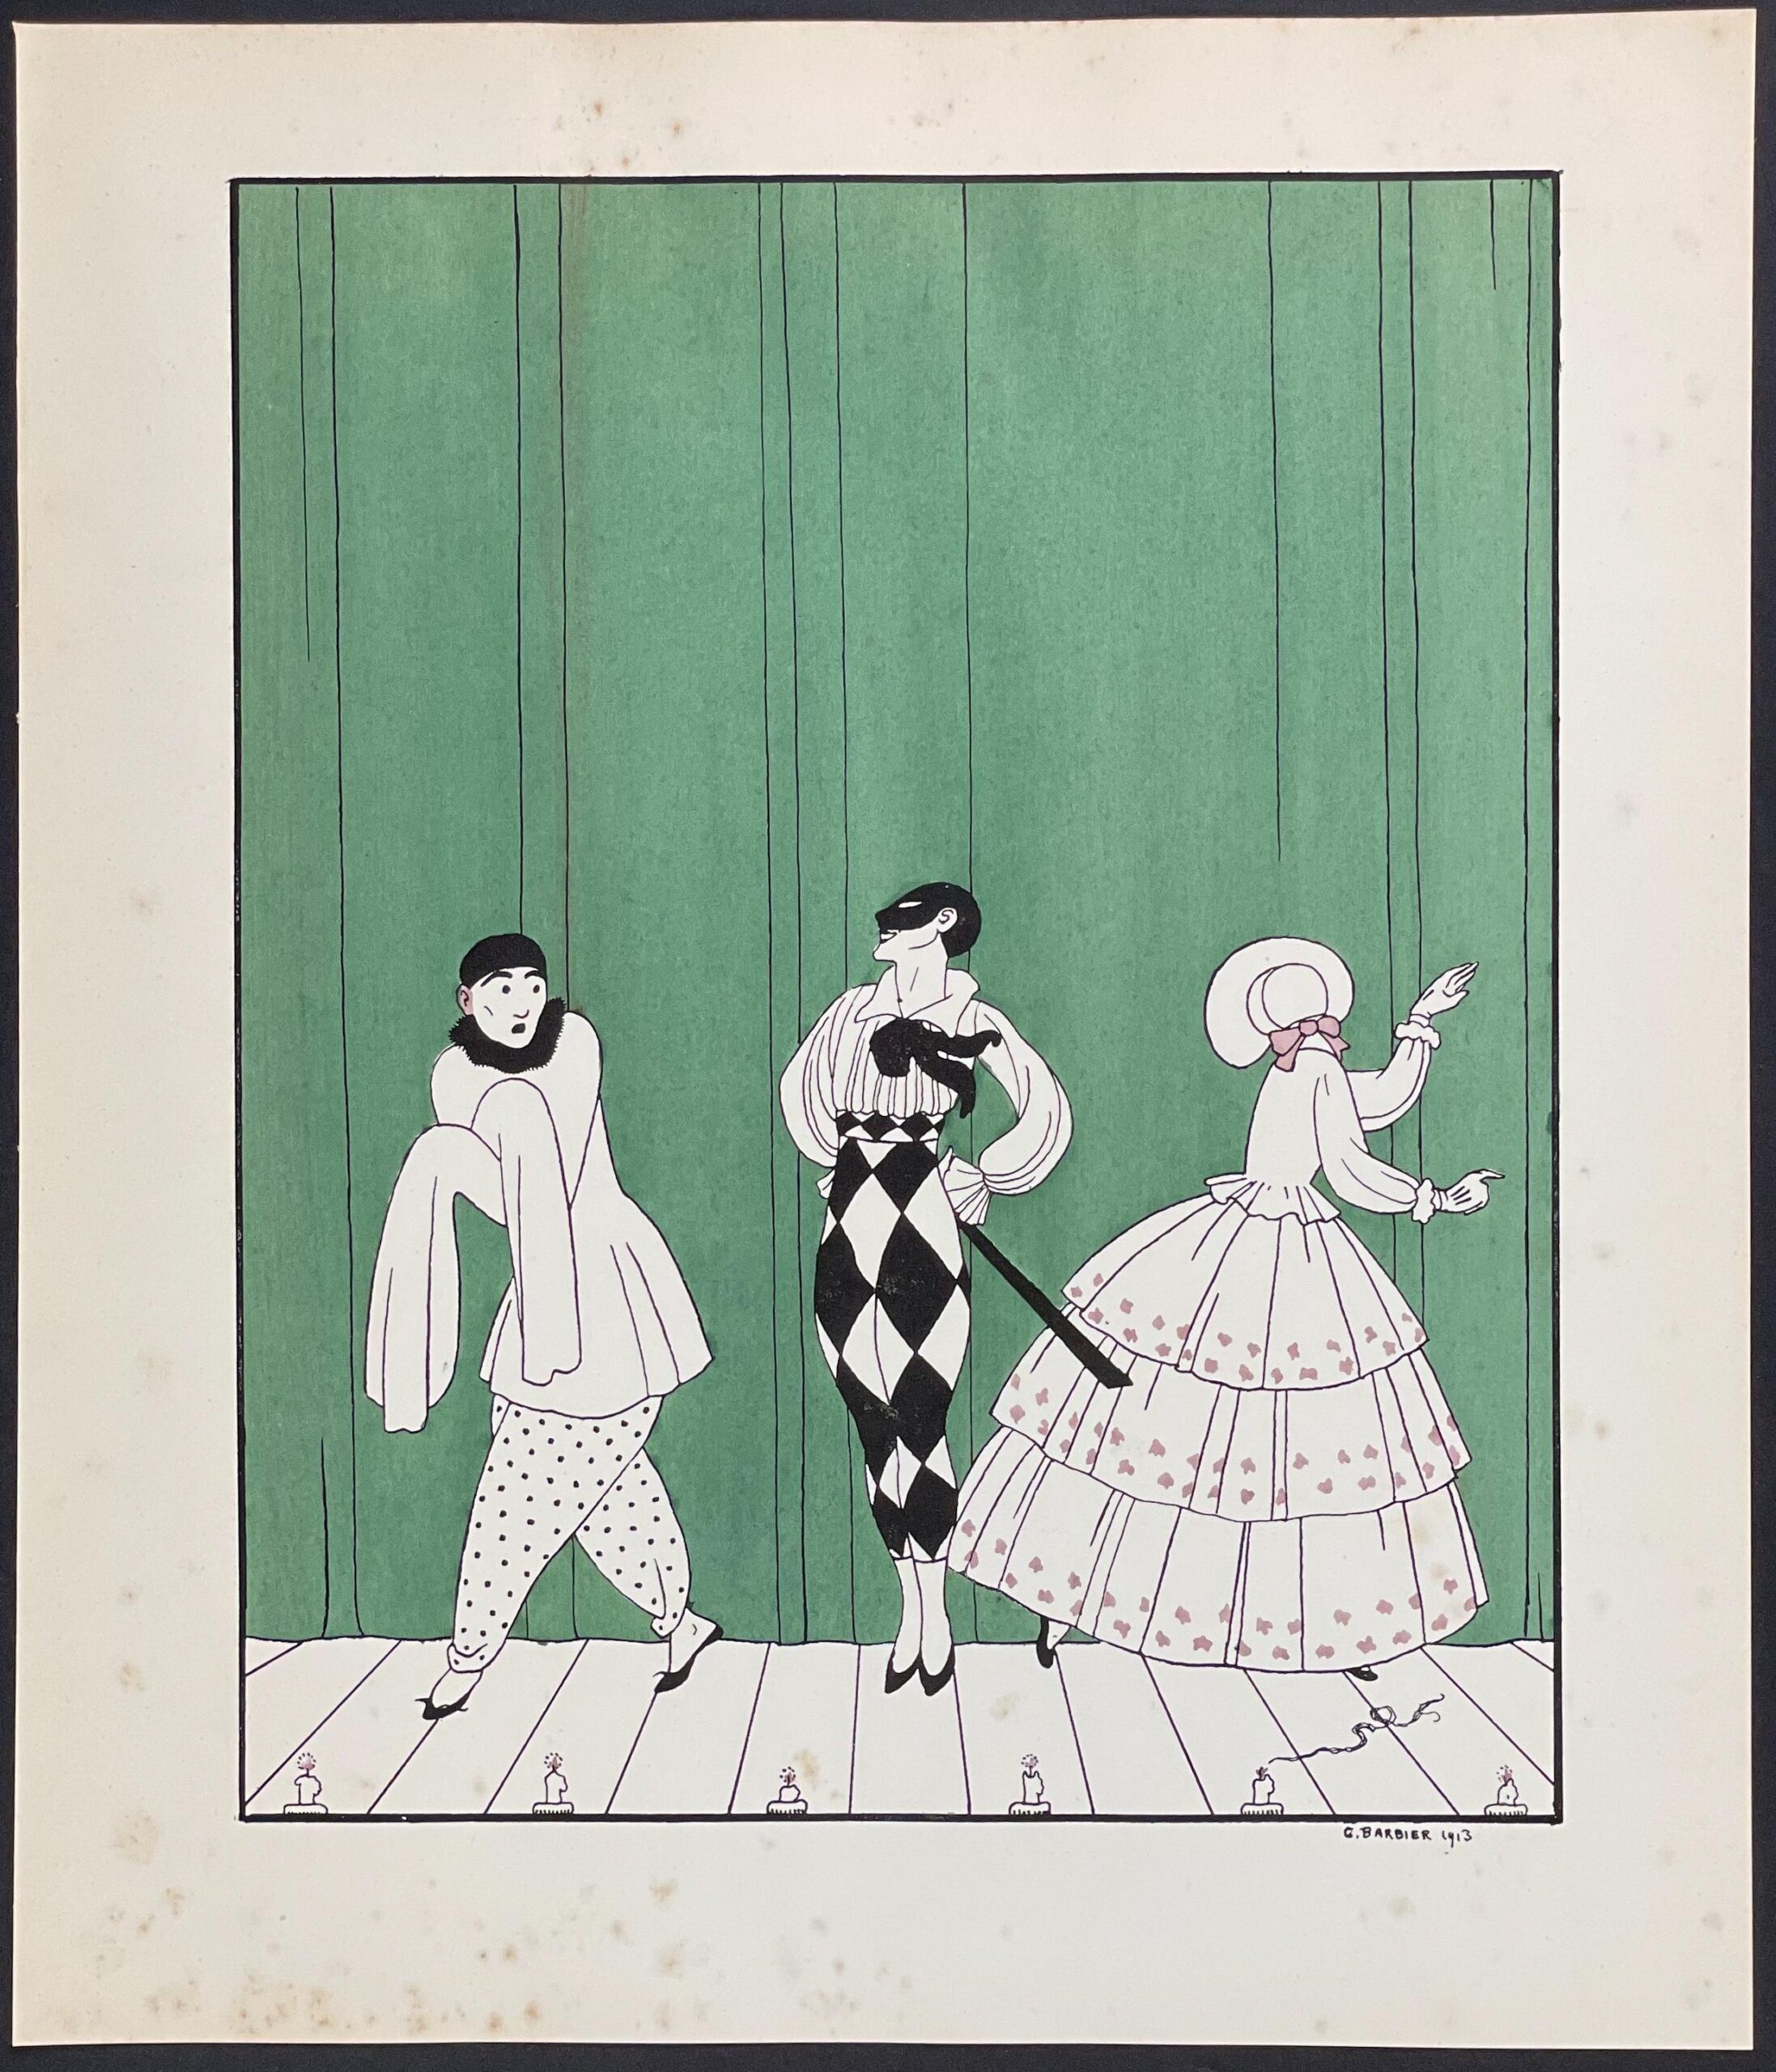 "Stage Performers - Nijinsky Dance" by Georges Barbier